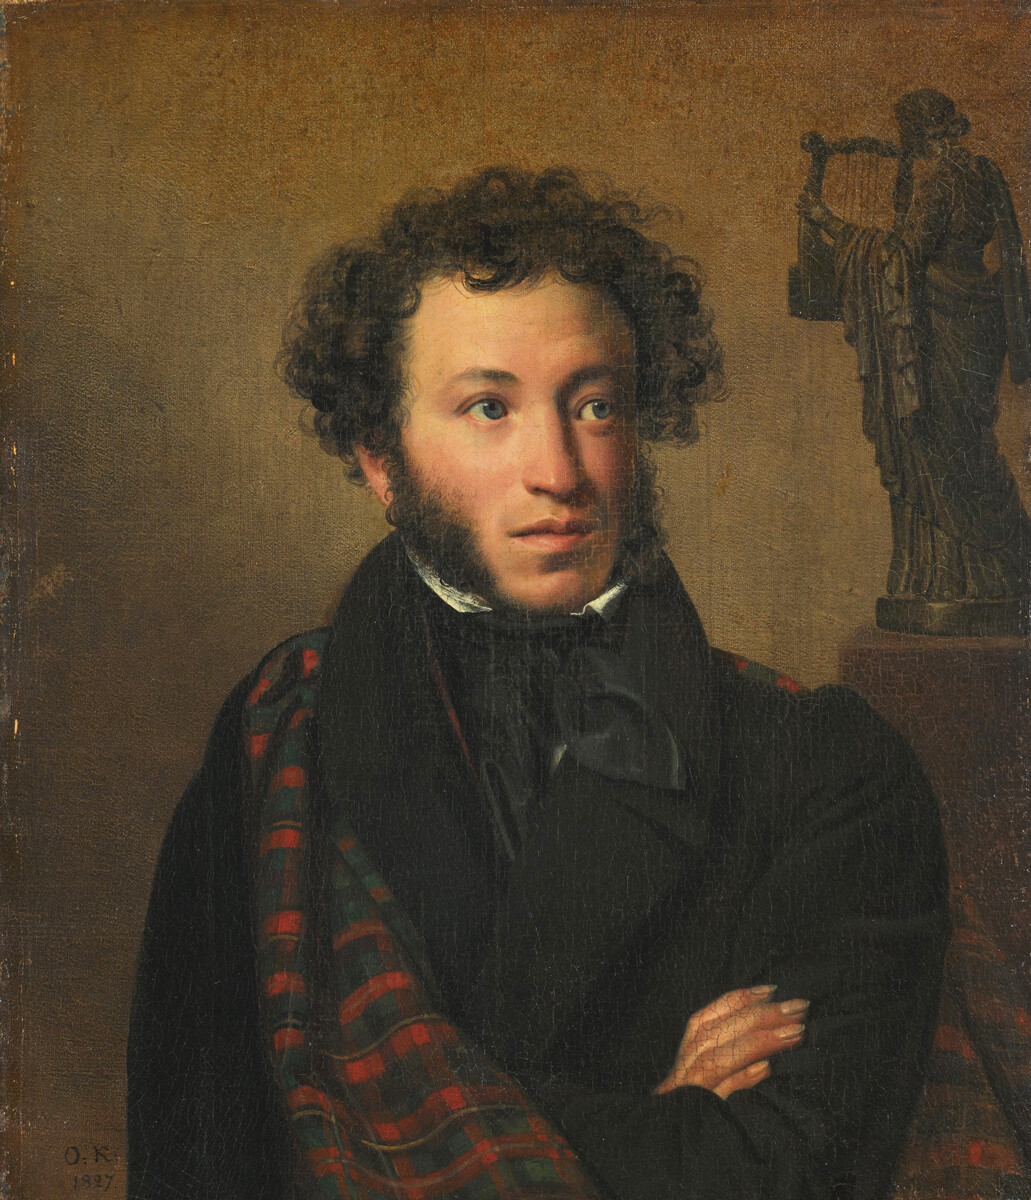 Портрет на А.С. Пушкин, 1827, Орест Кипренский